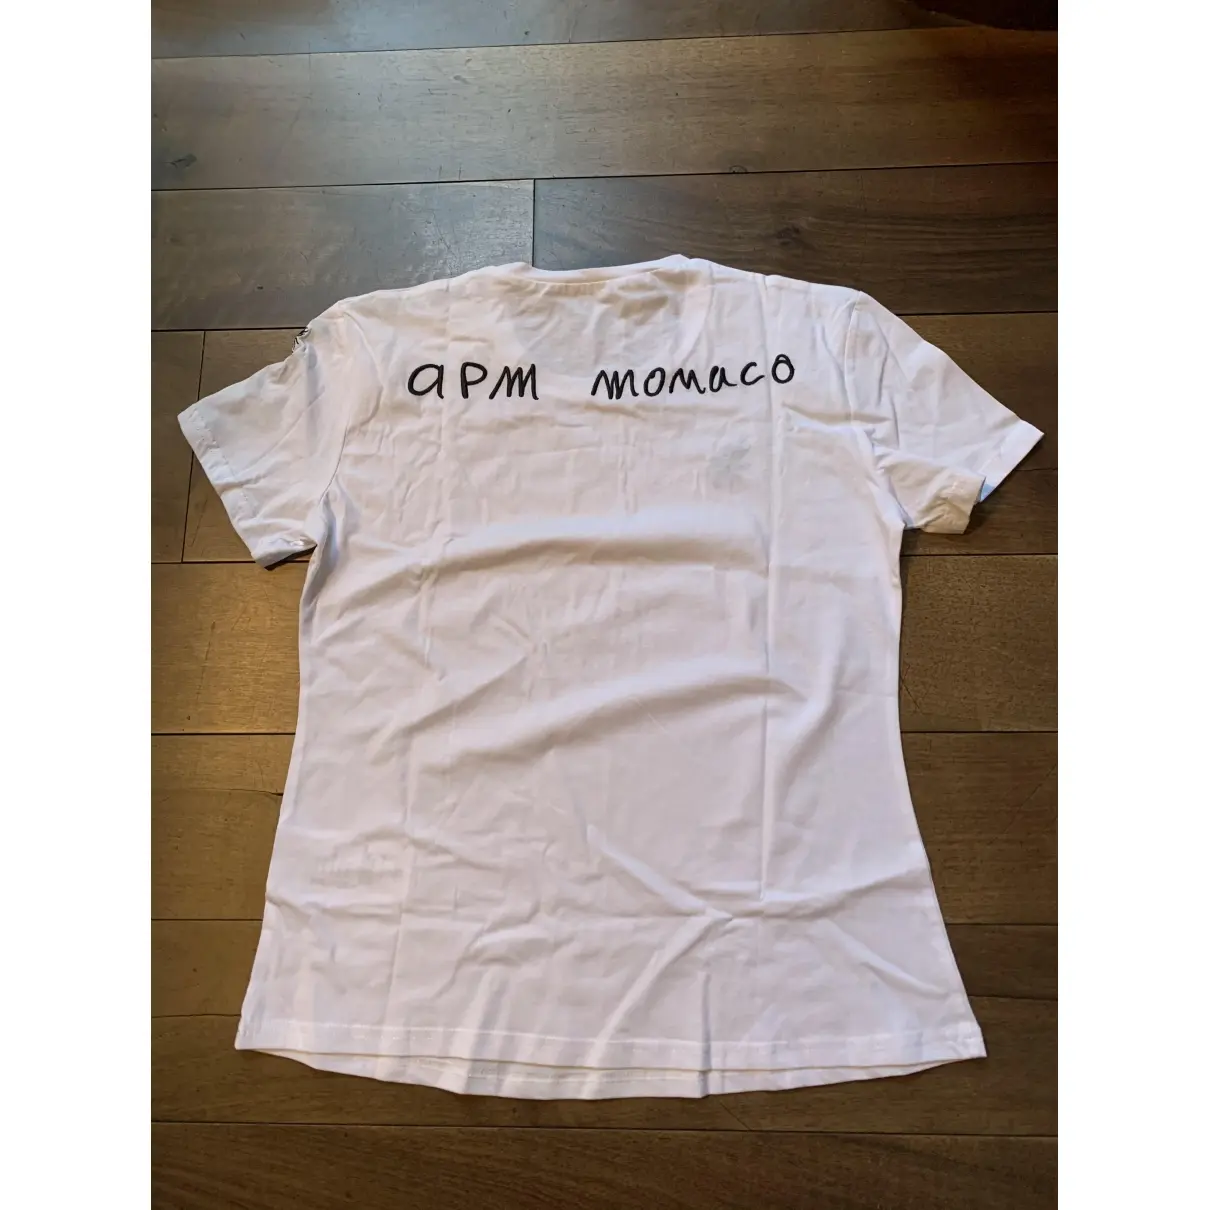 APM Monaco T-shirt for sale